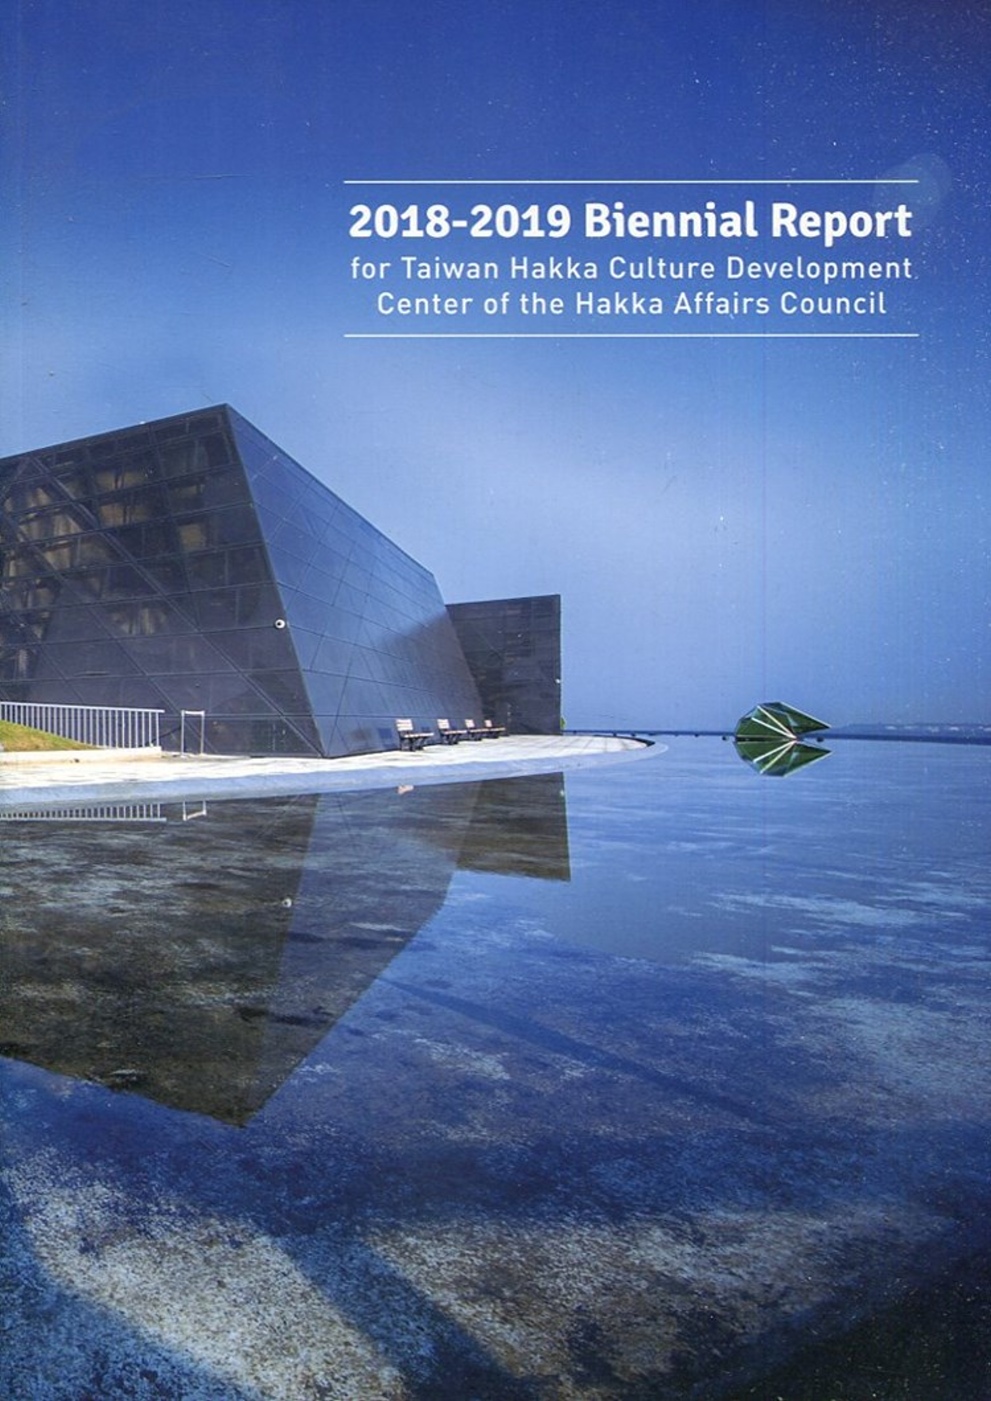 A 2018-2019 biennial report for Taiwan Hakka Culture Development Center of the Hakka Affairs Council